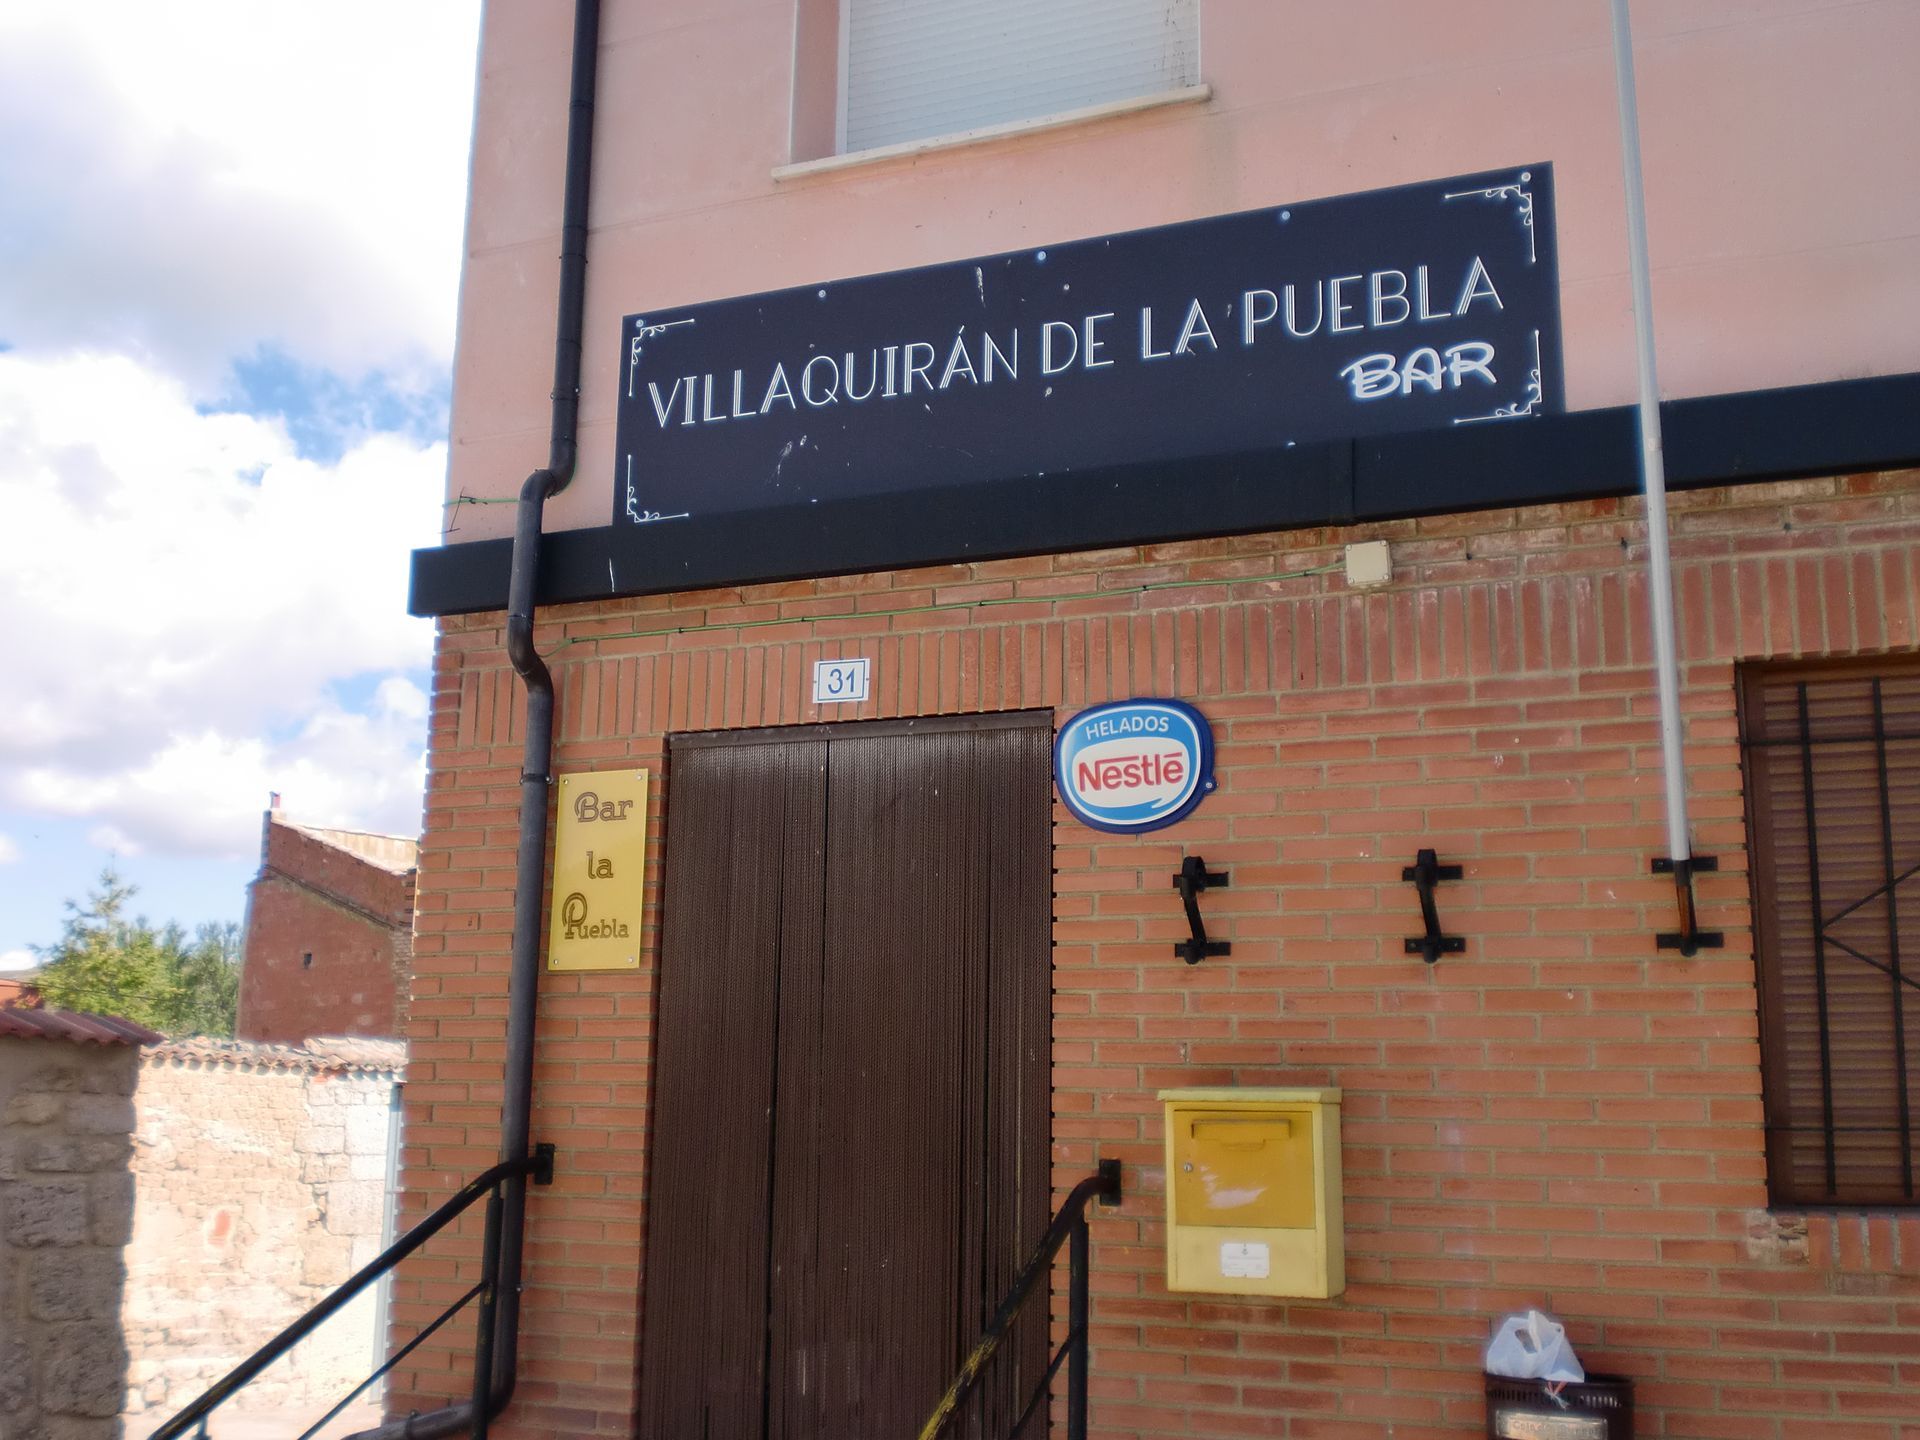 Bar Villaquirán de la Puebla